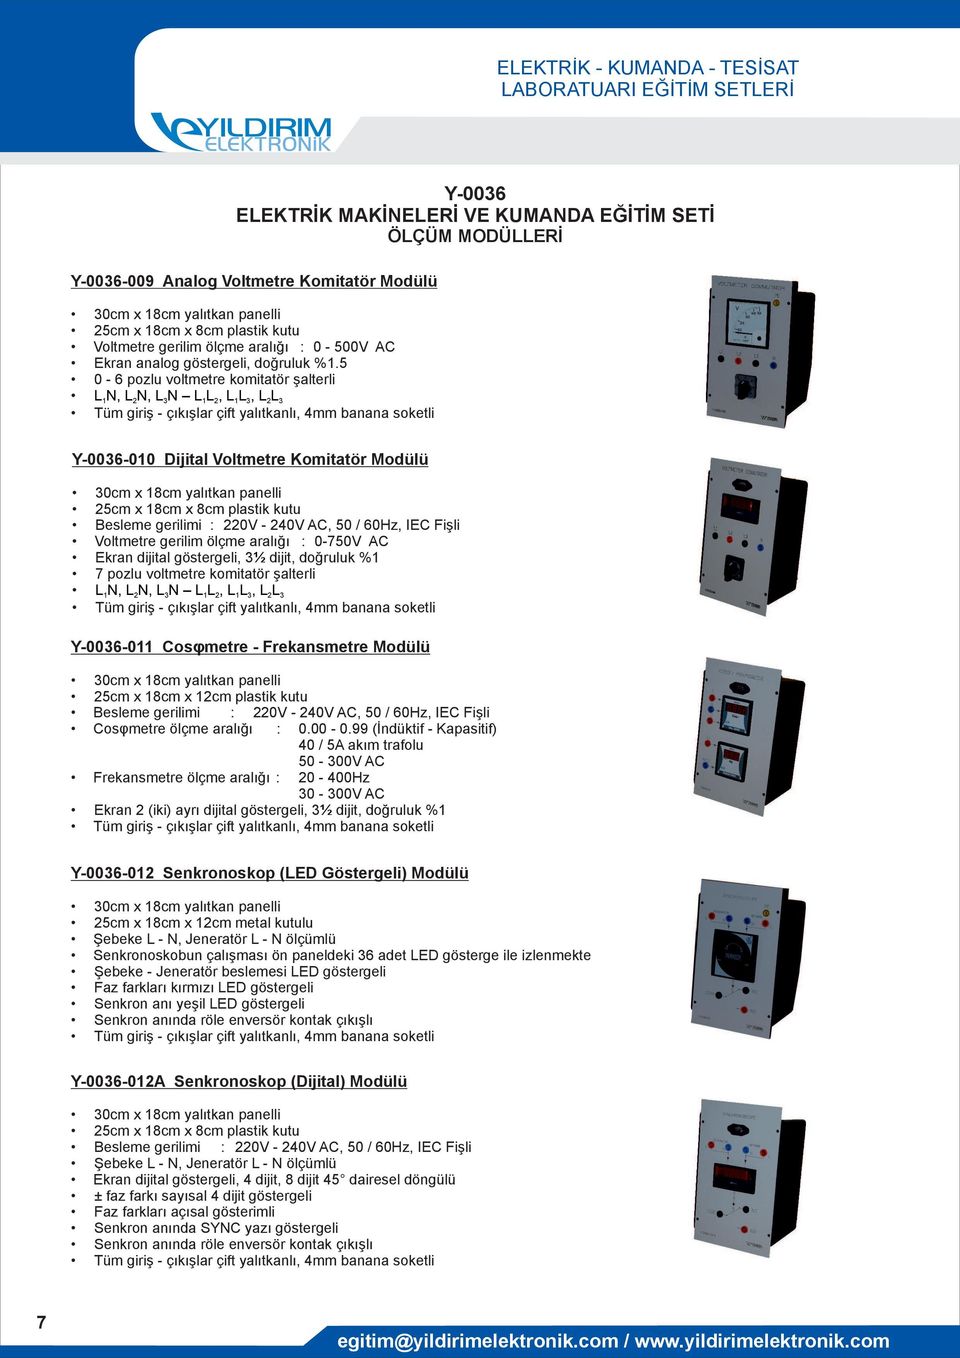 Voltmetre gerilim ölçme aralığı : 0-750V AC Ekran dijital göstergeli, 3½ dijit, doğruluk %1 7 pozlu voltmetre komitatör şalterli L1N, L2N, L3N L1L 2, L1L 3, L2L3-011 Cosφmetre - Frekansmetre Modülü